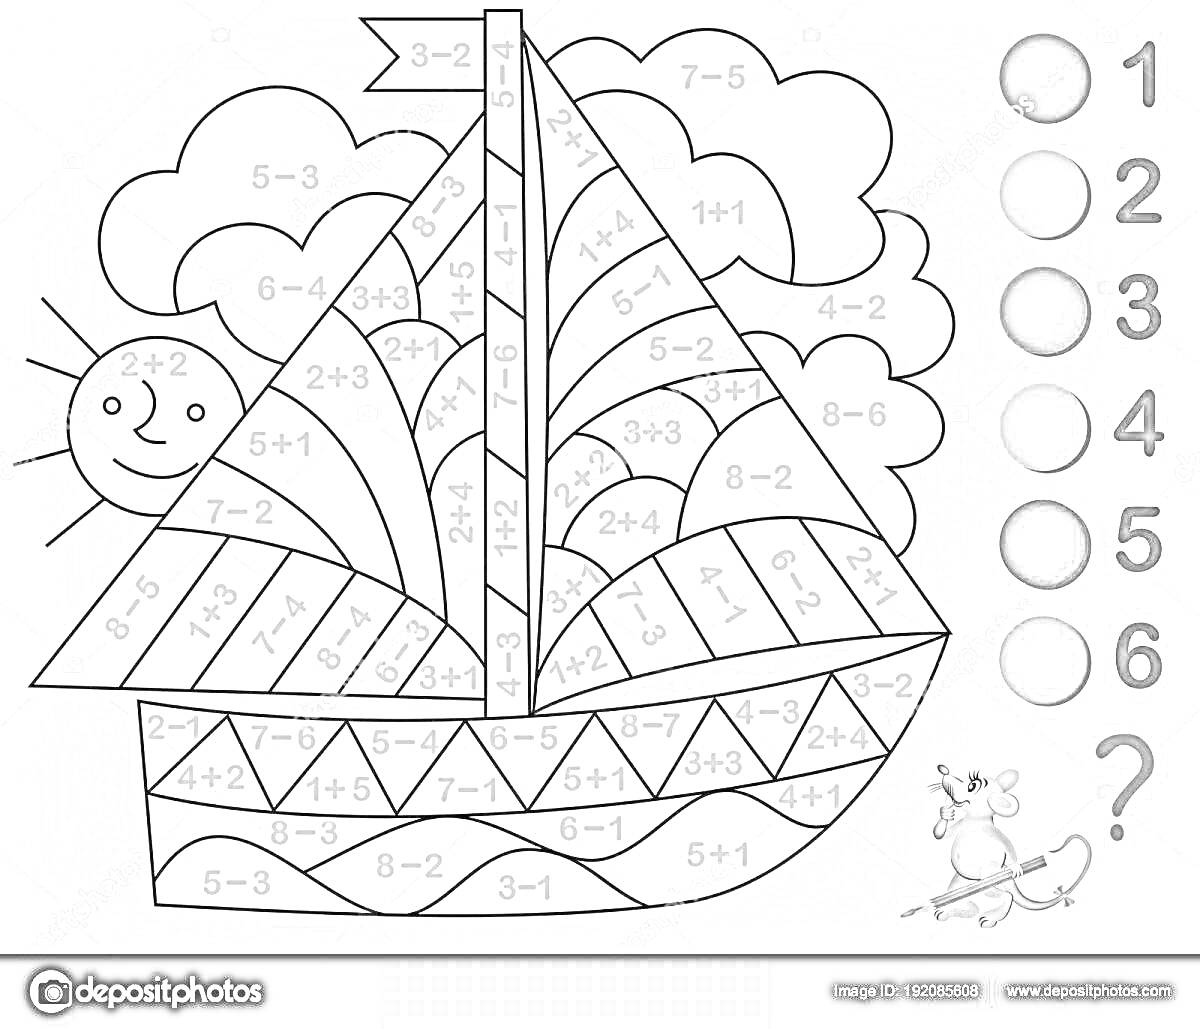 Раскраска Раскраска: парусный корабль с задачами на вычитание и сложение, солнце, облака и мышка